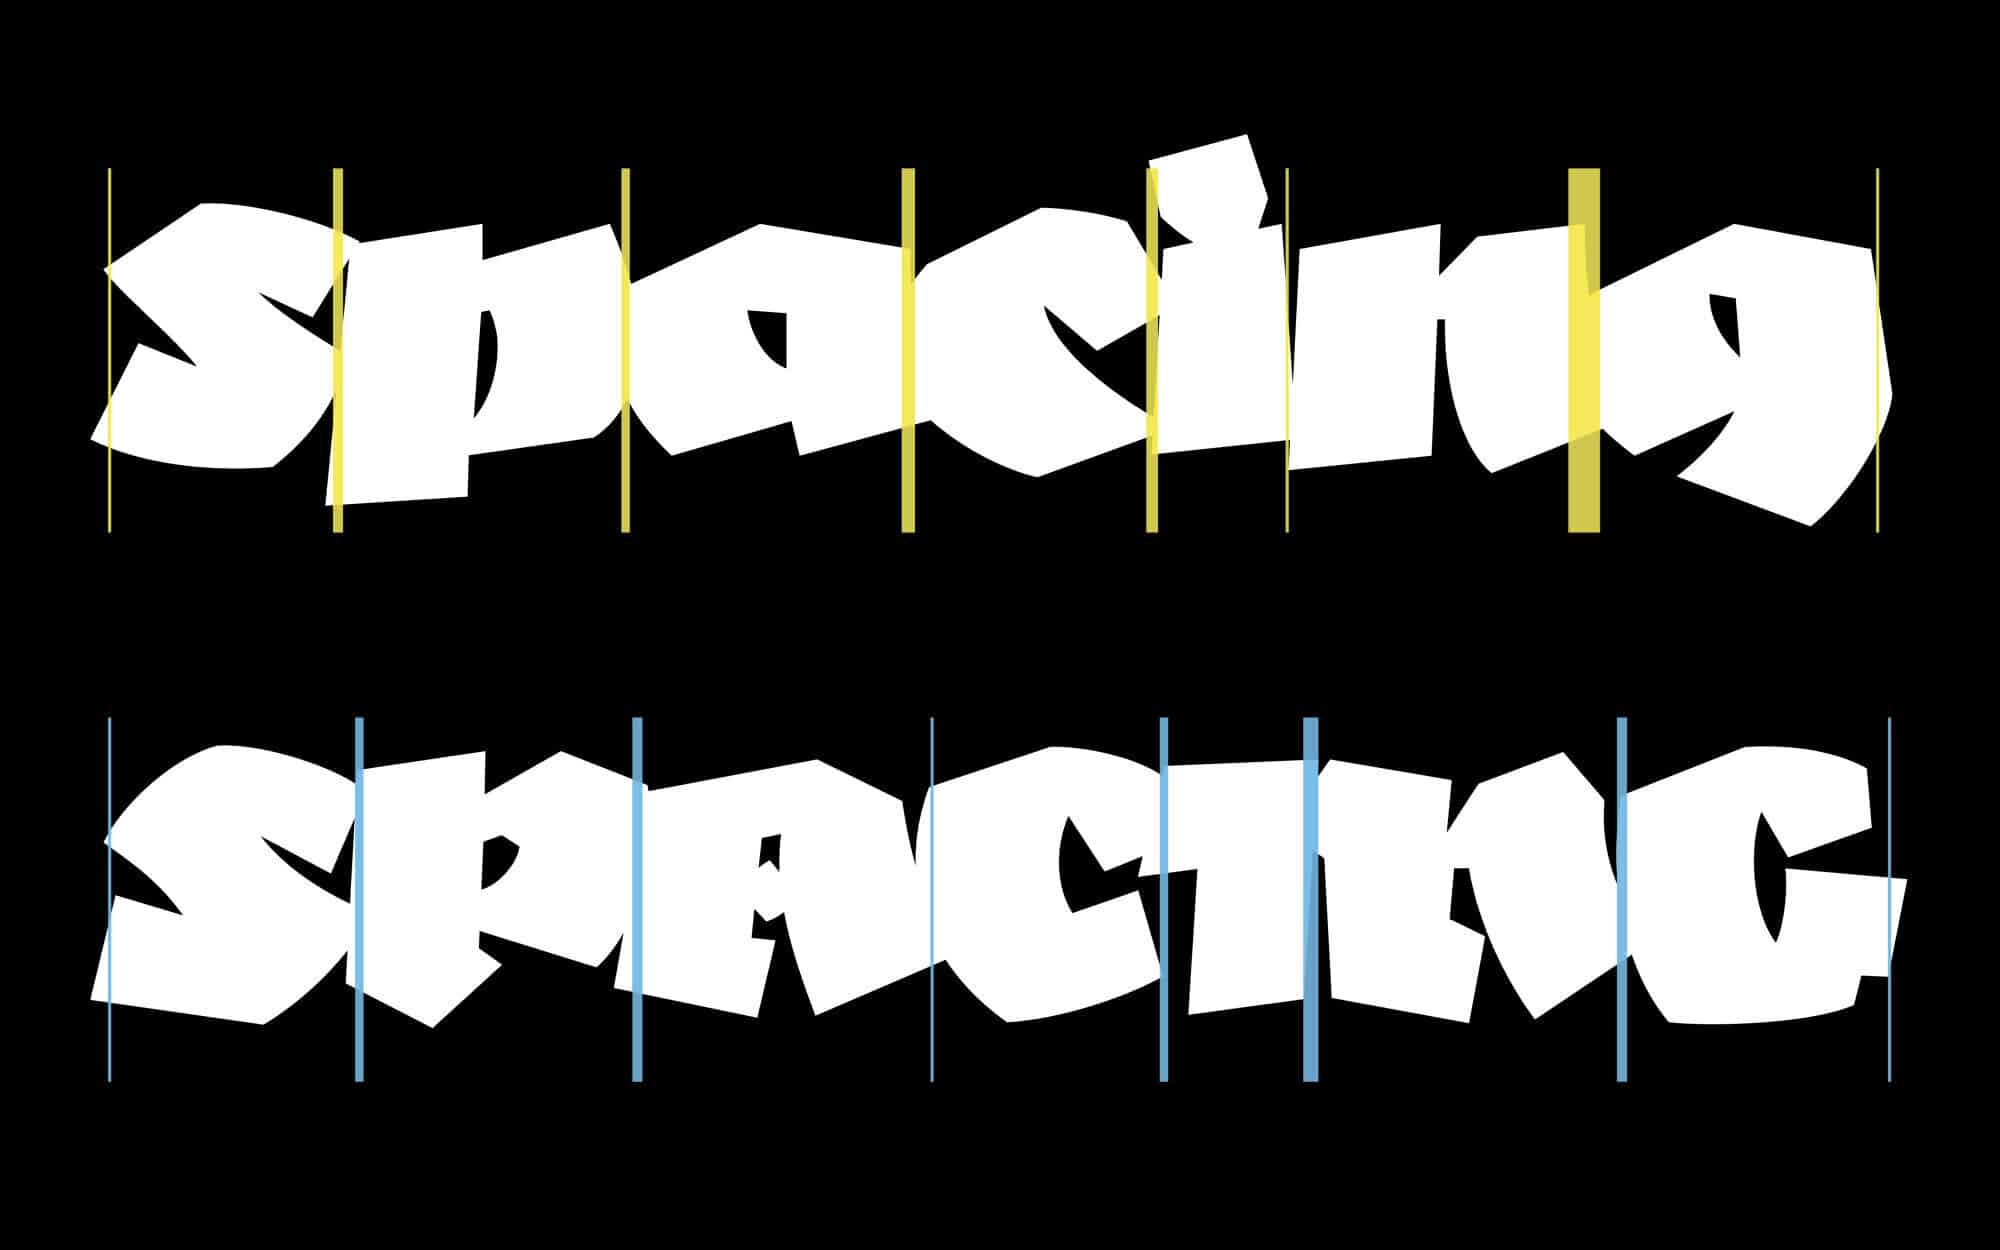 Typografie: Spacing beim Displayfont Negatif